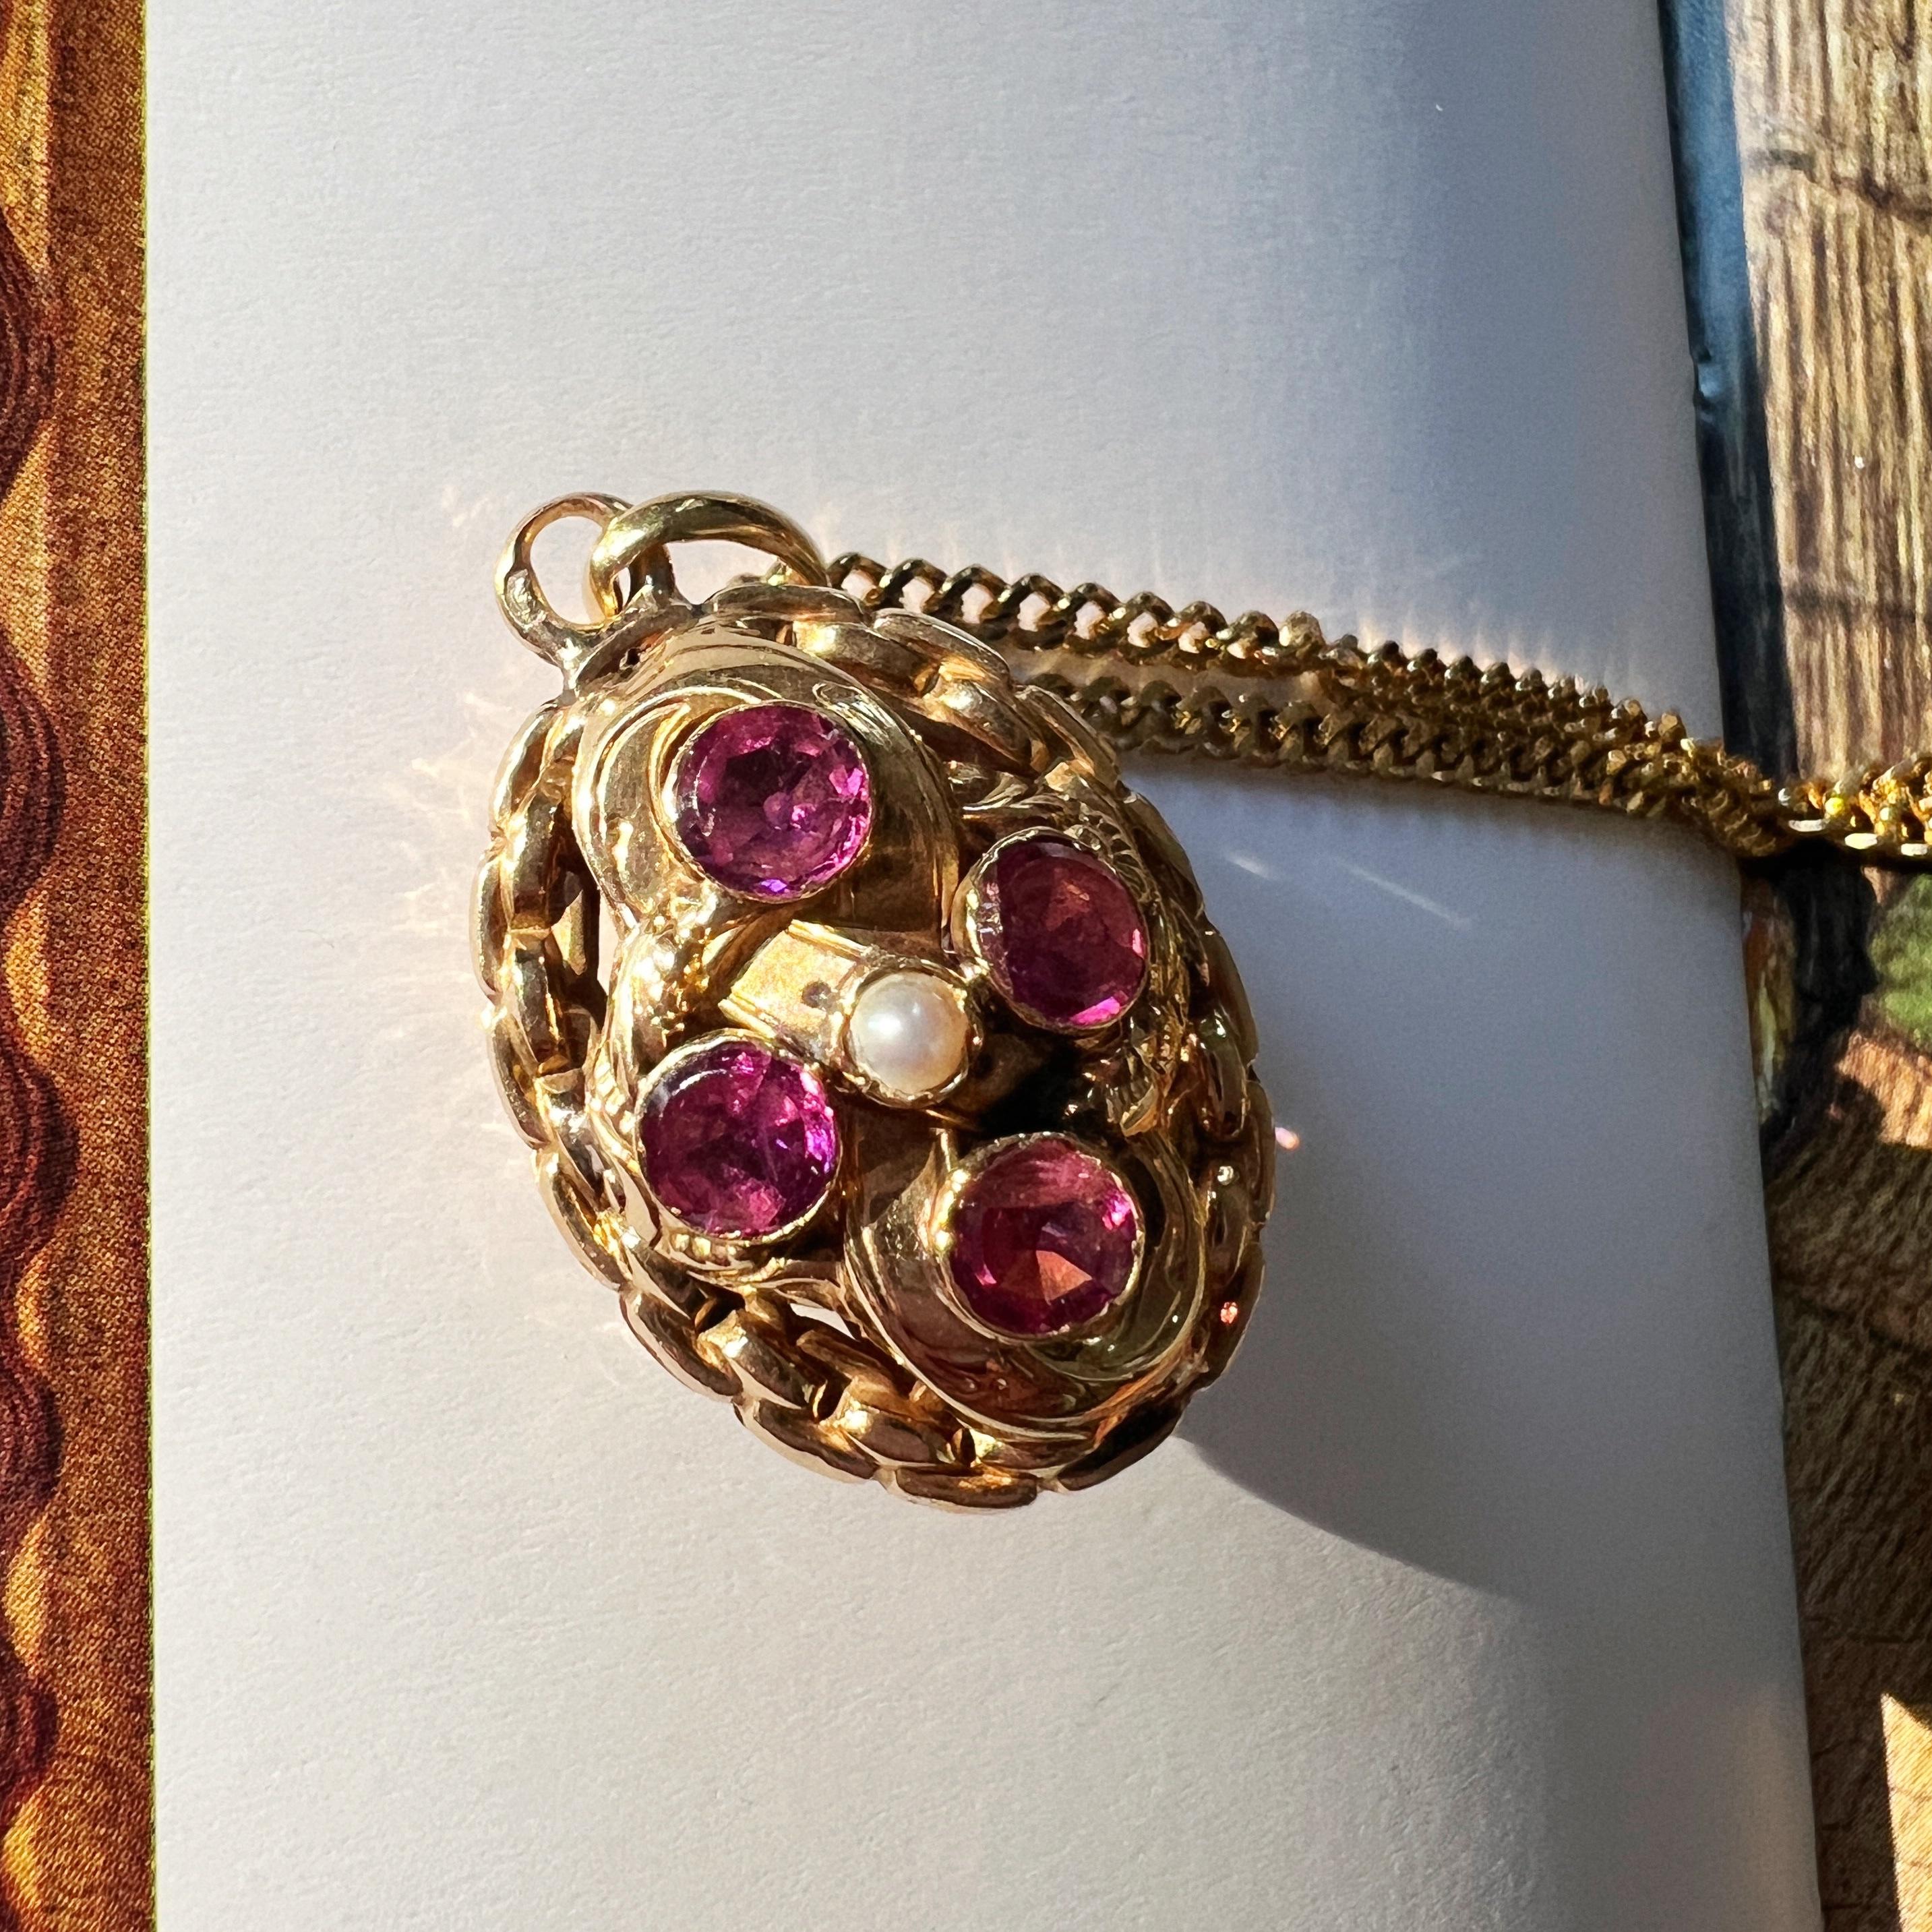 Nous vendons un ravissant pendentif en grenat double face à motif floral du 19e siècle - un véritable bijou de douceur intemporelle.

Chaque côté est orné de quatre grenats almandins d'un rouge violacé captivant, chacun serrant en son centre une